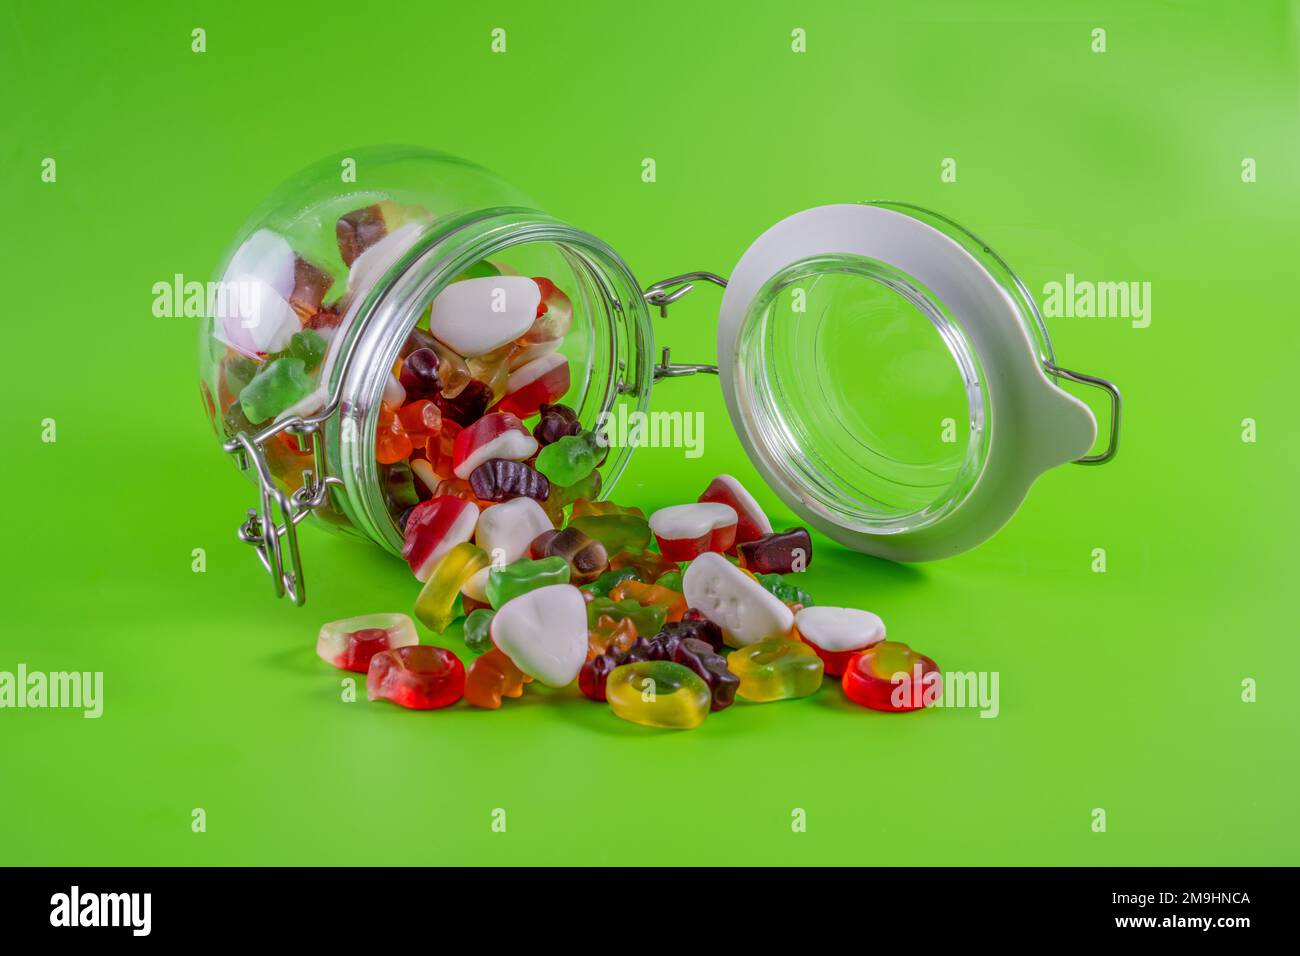 Süßigkeiten-Becher offen, Inhalt fällt auf grünen Tischhintergrund isoliert heraus Stockfoto